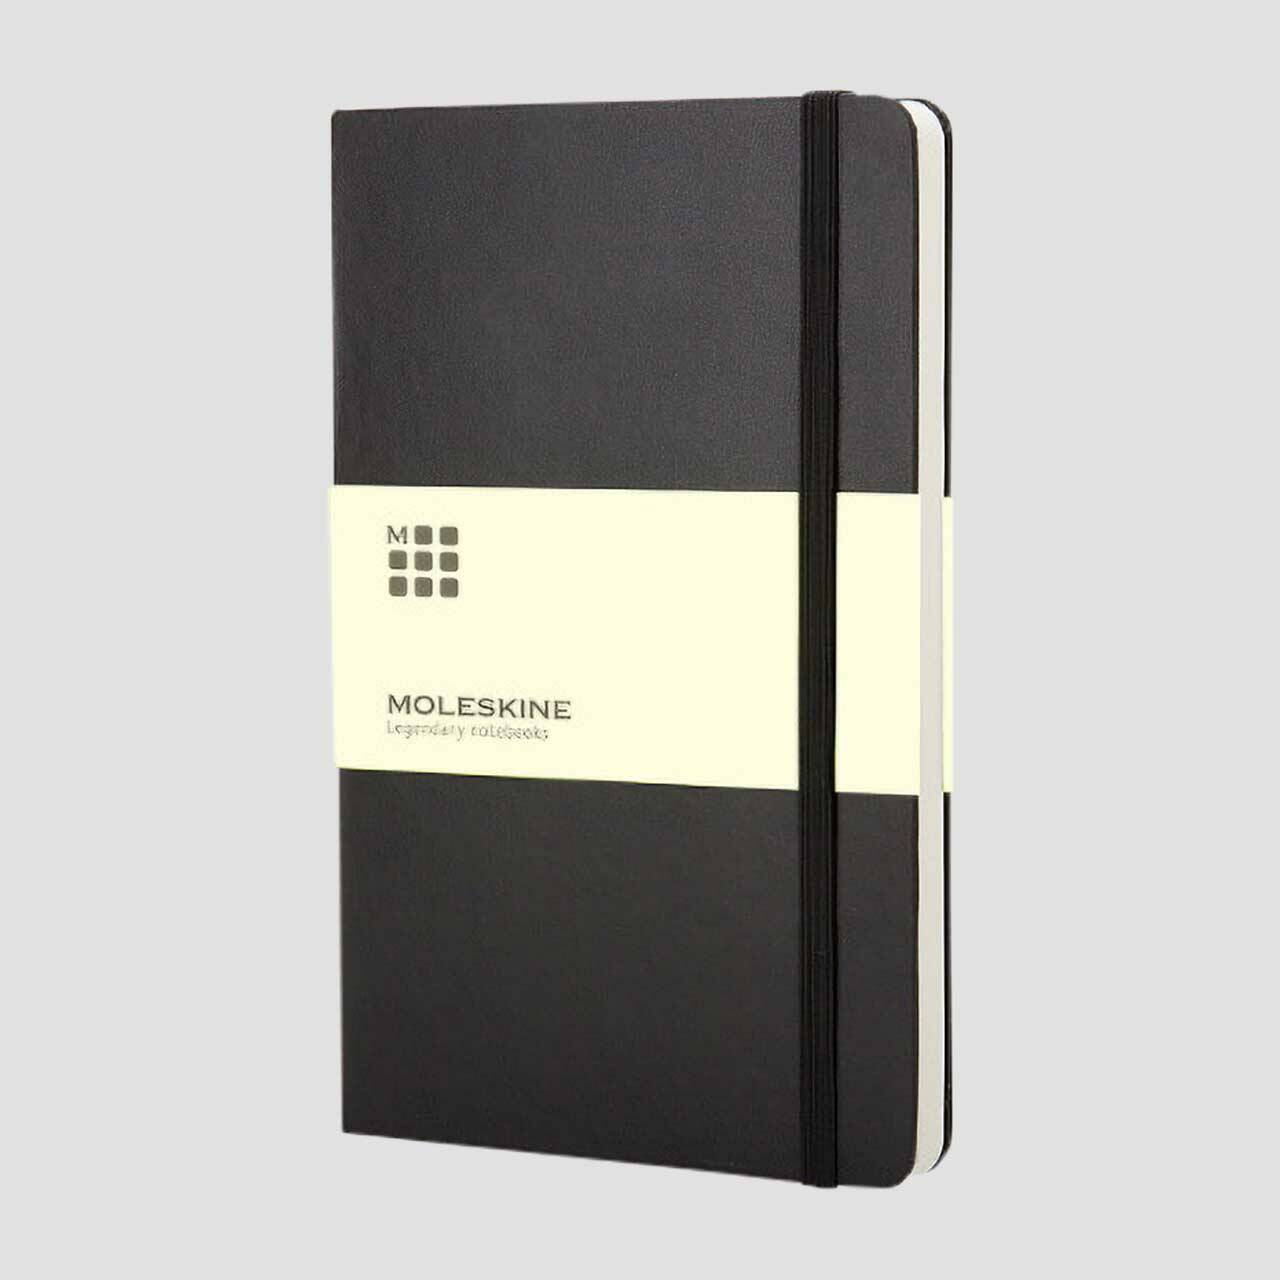 Moleskine notitieboek hard cover met banderol, zwart